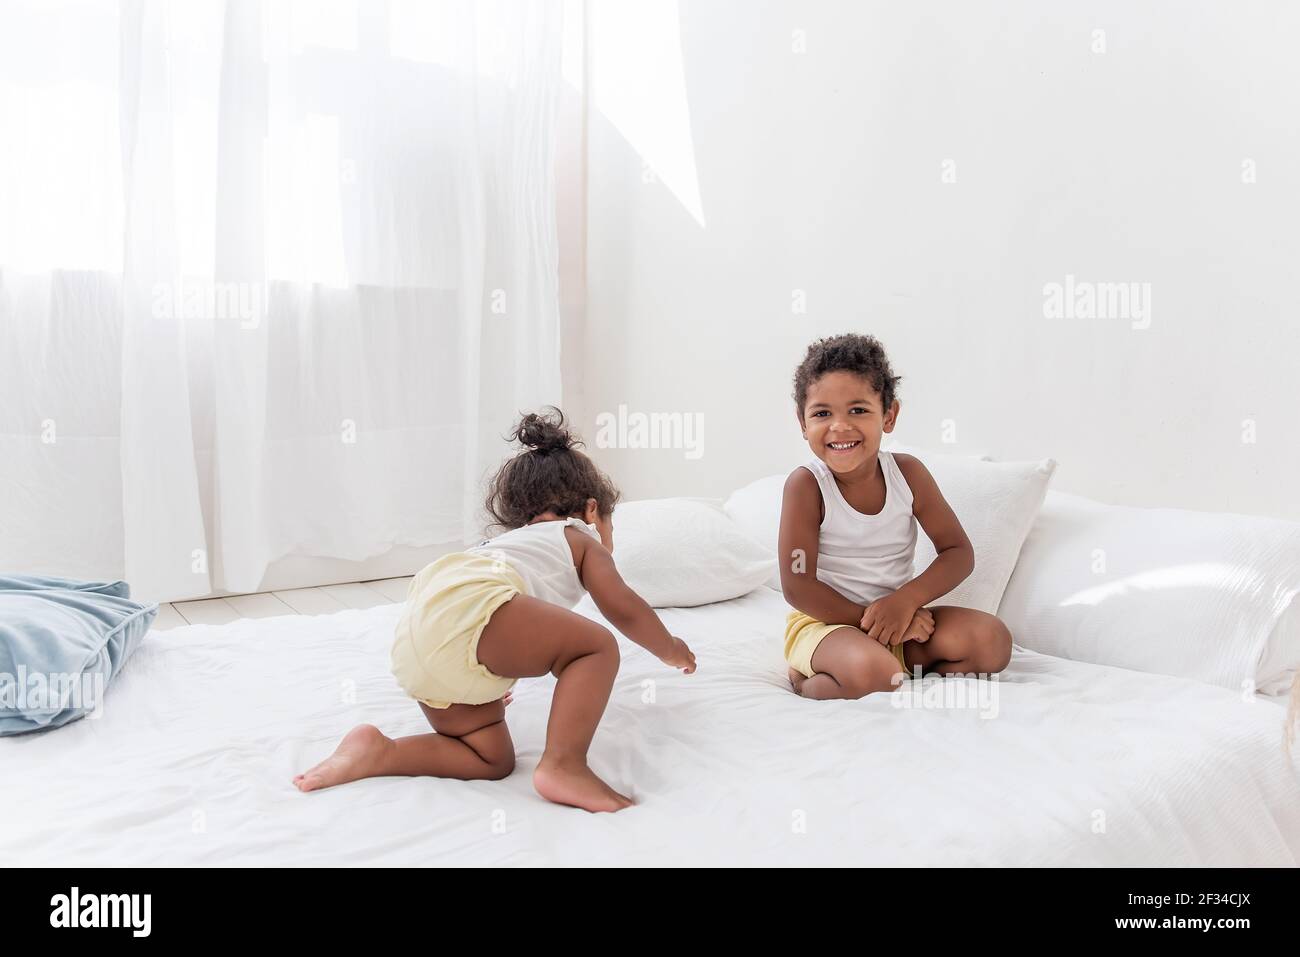 Frère et soeur Afro-Américains jouent ensemble sur un lit blanc dans un loft intérieur. Les frères et sœurs s'amusent parmi les oreillers bleus le matin. Pul. Garçon Banque D'Images